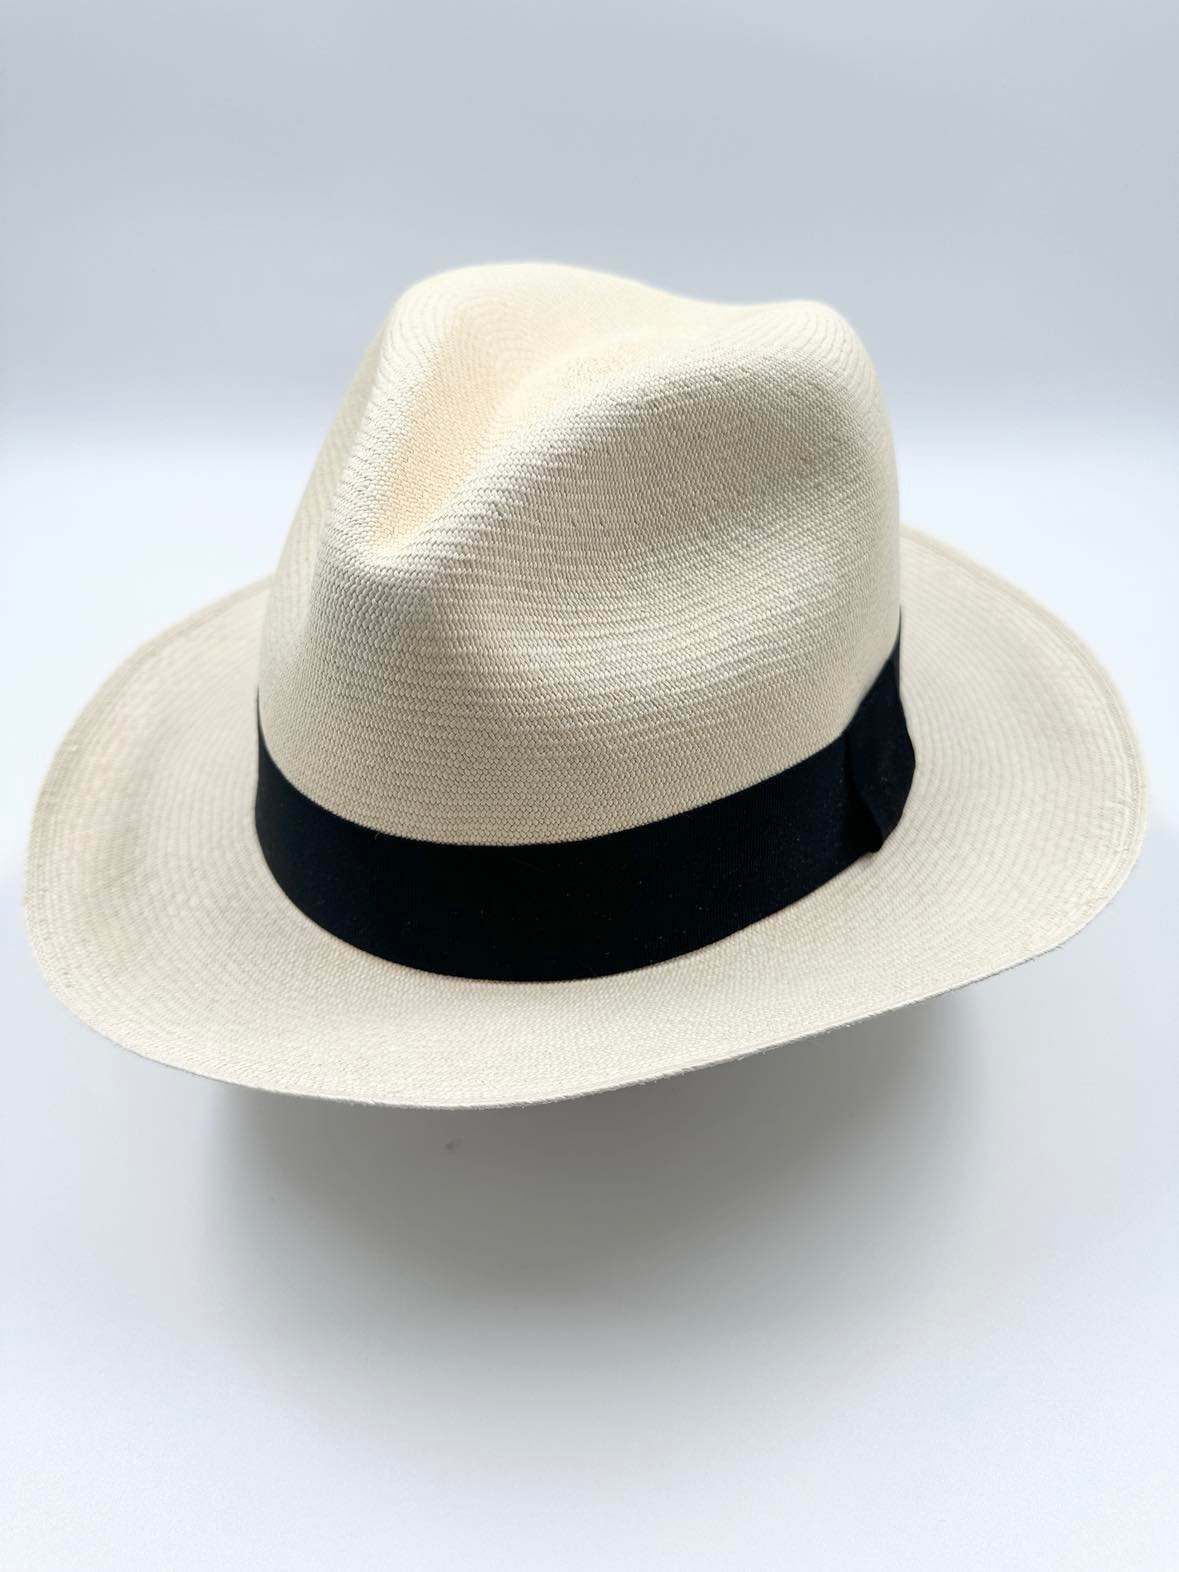 Ægte Montecristi Fedora Panama Hat med en kvalitet på 21-22 fletninger pr. inch - håndflettet og unik